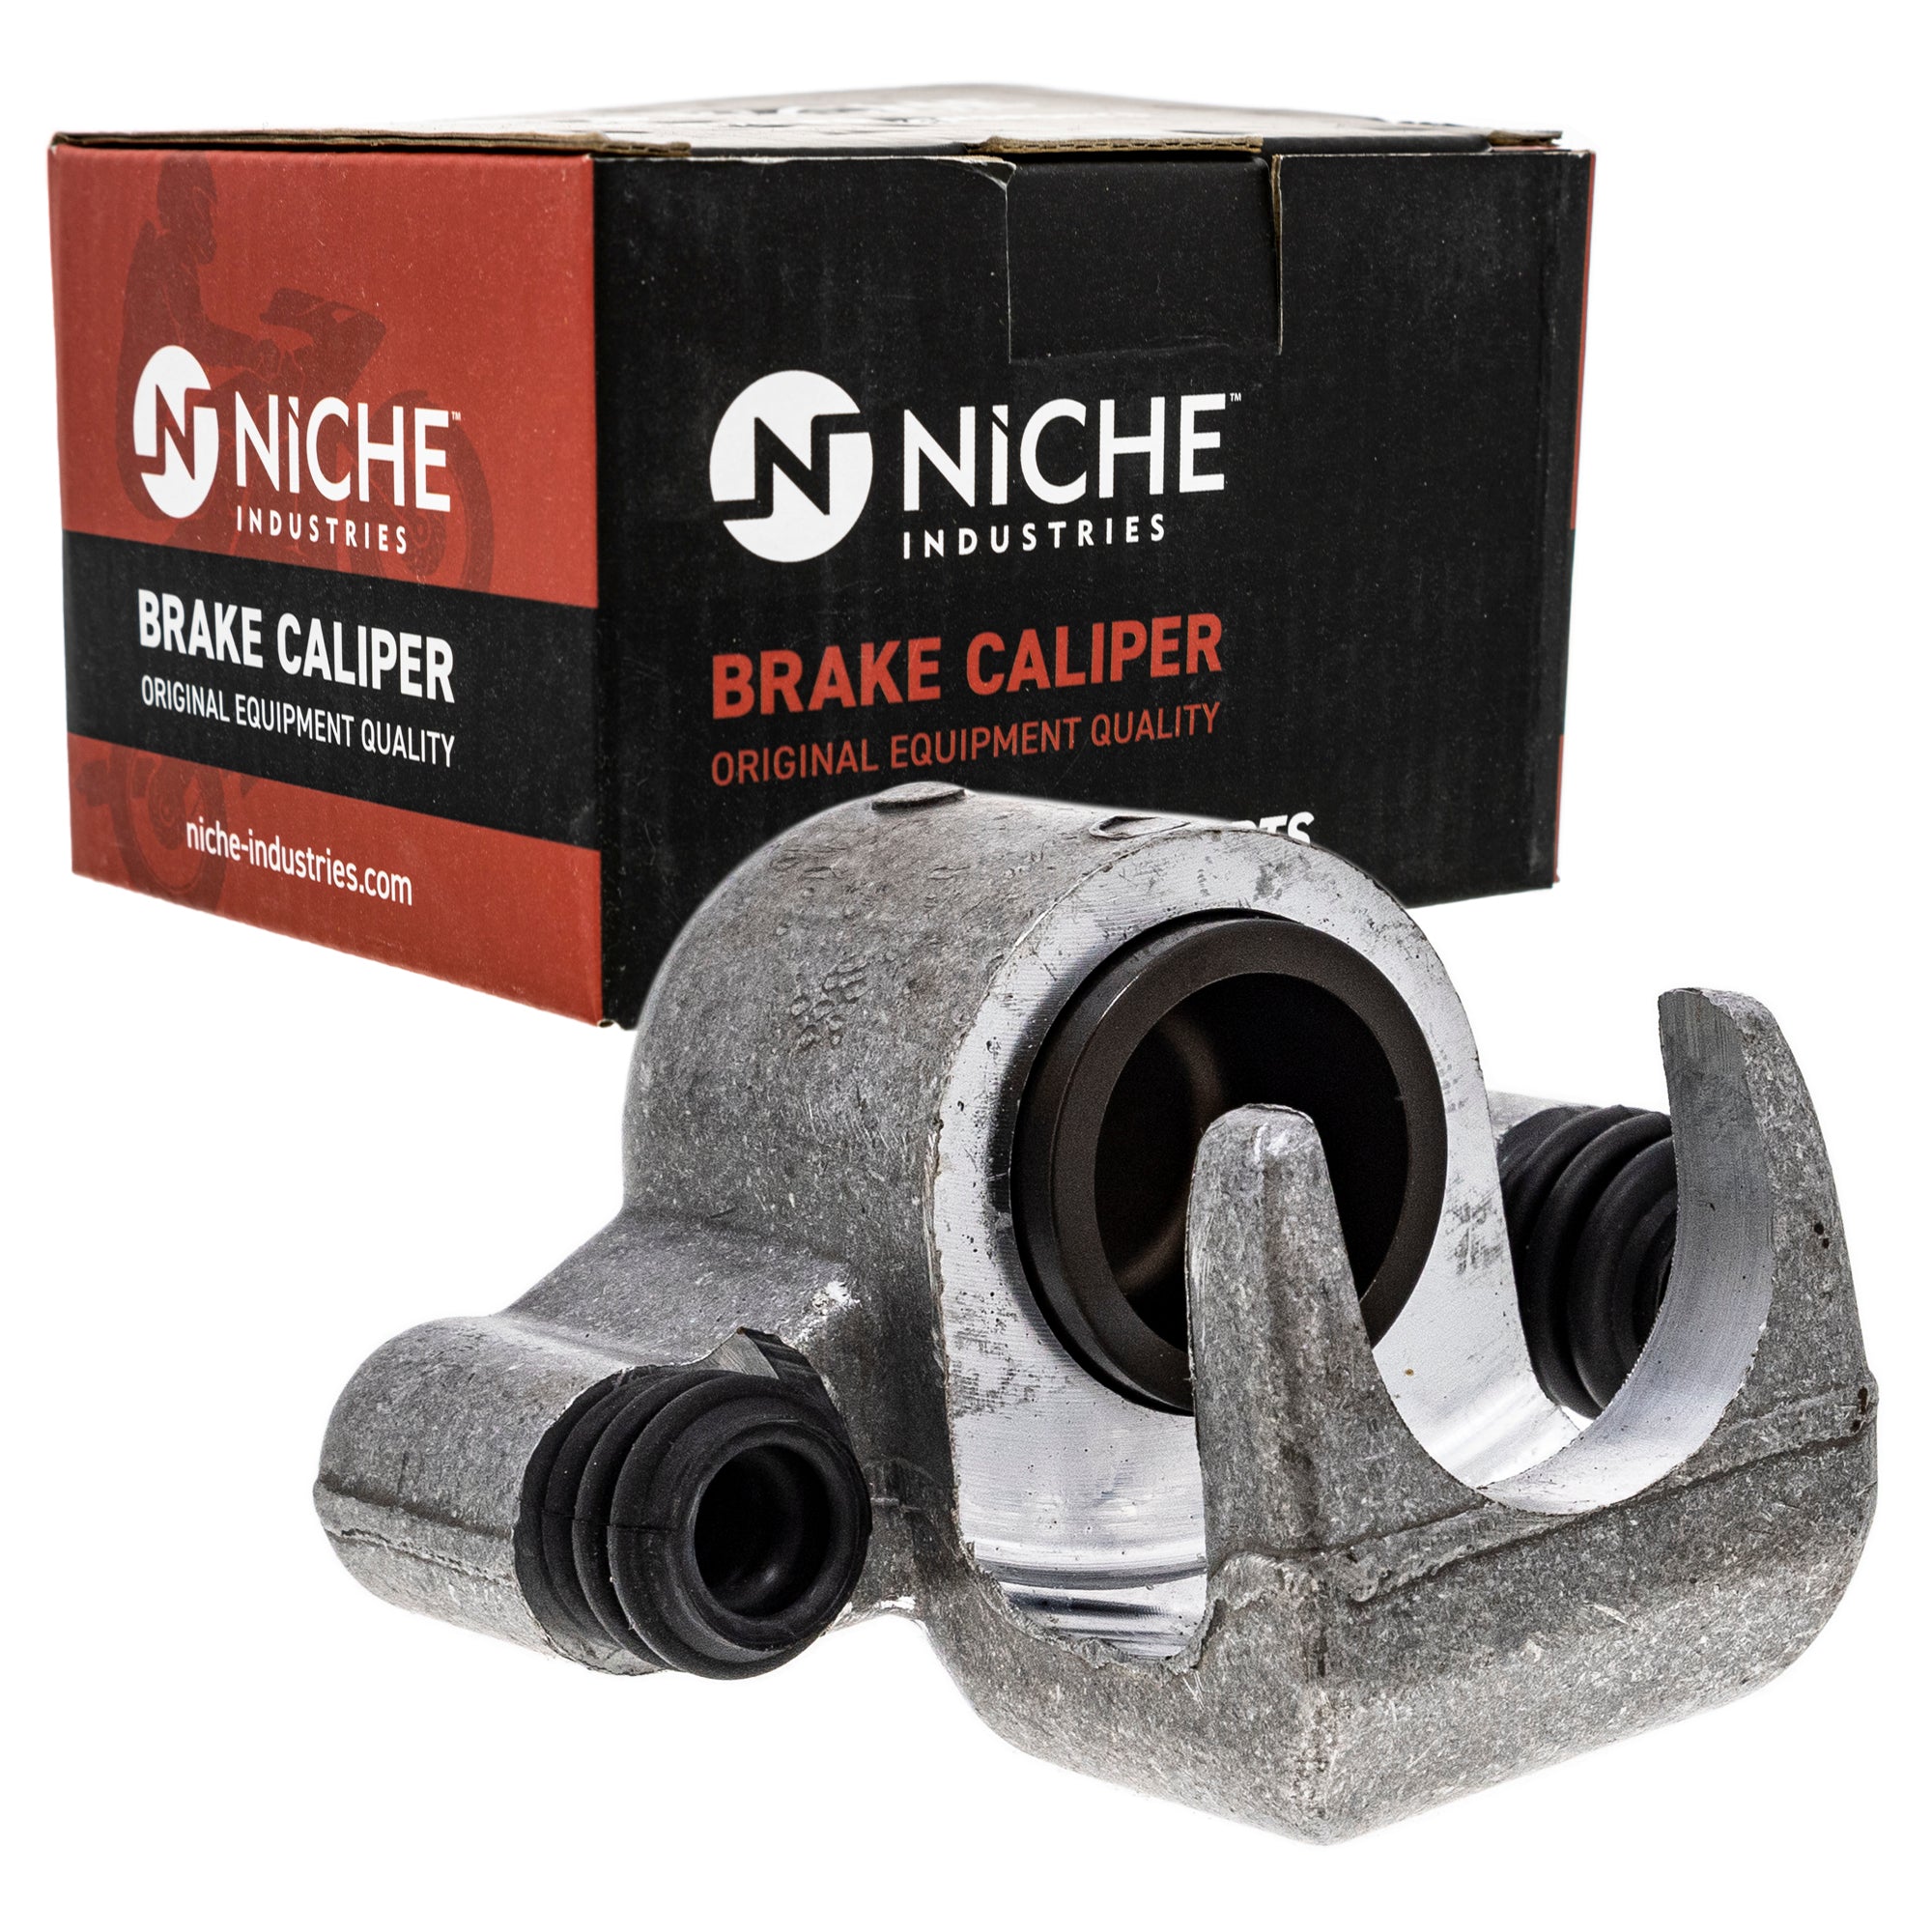 NICHE MK1001026 Brake Caliper Kit